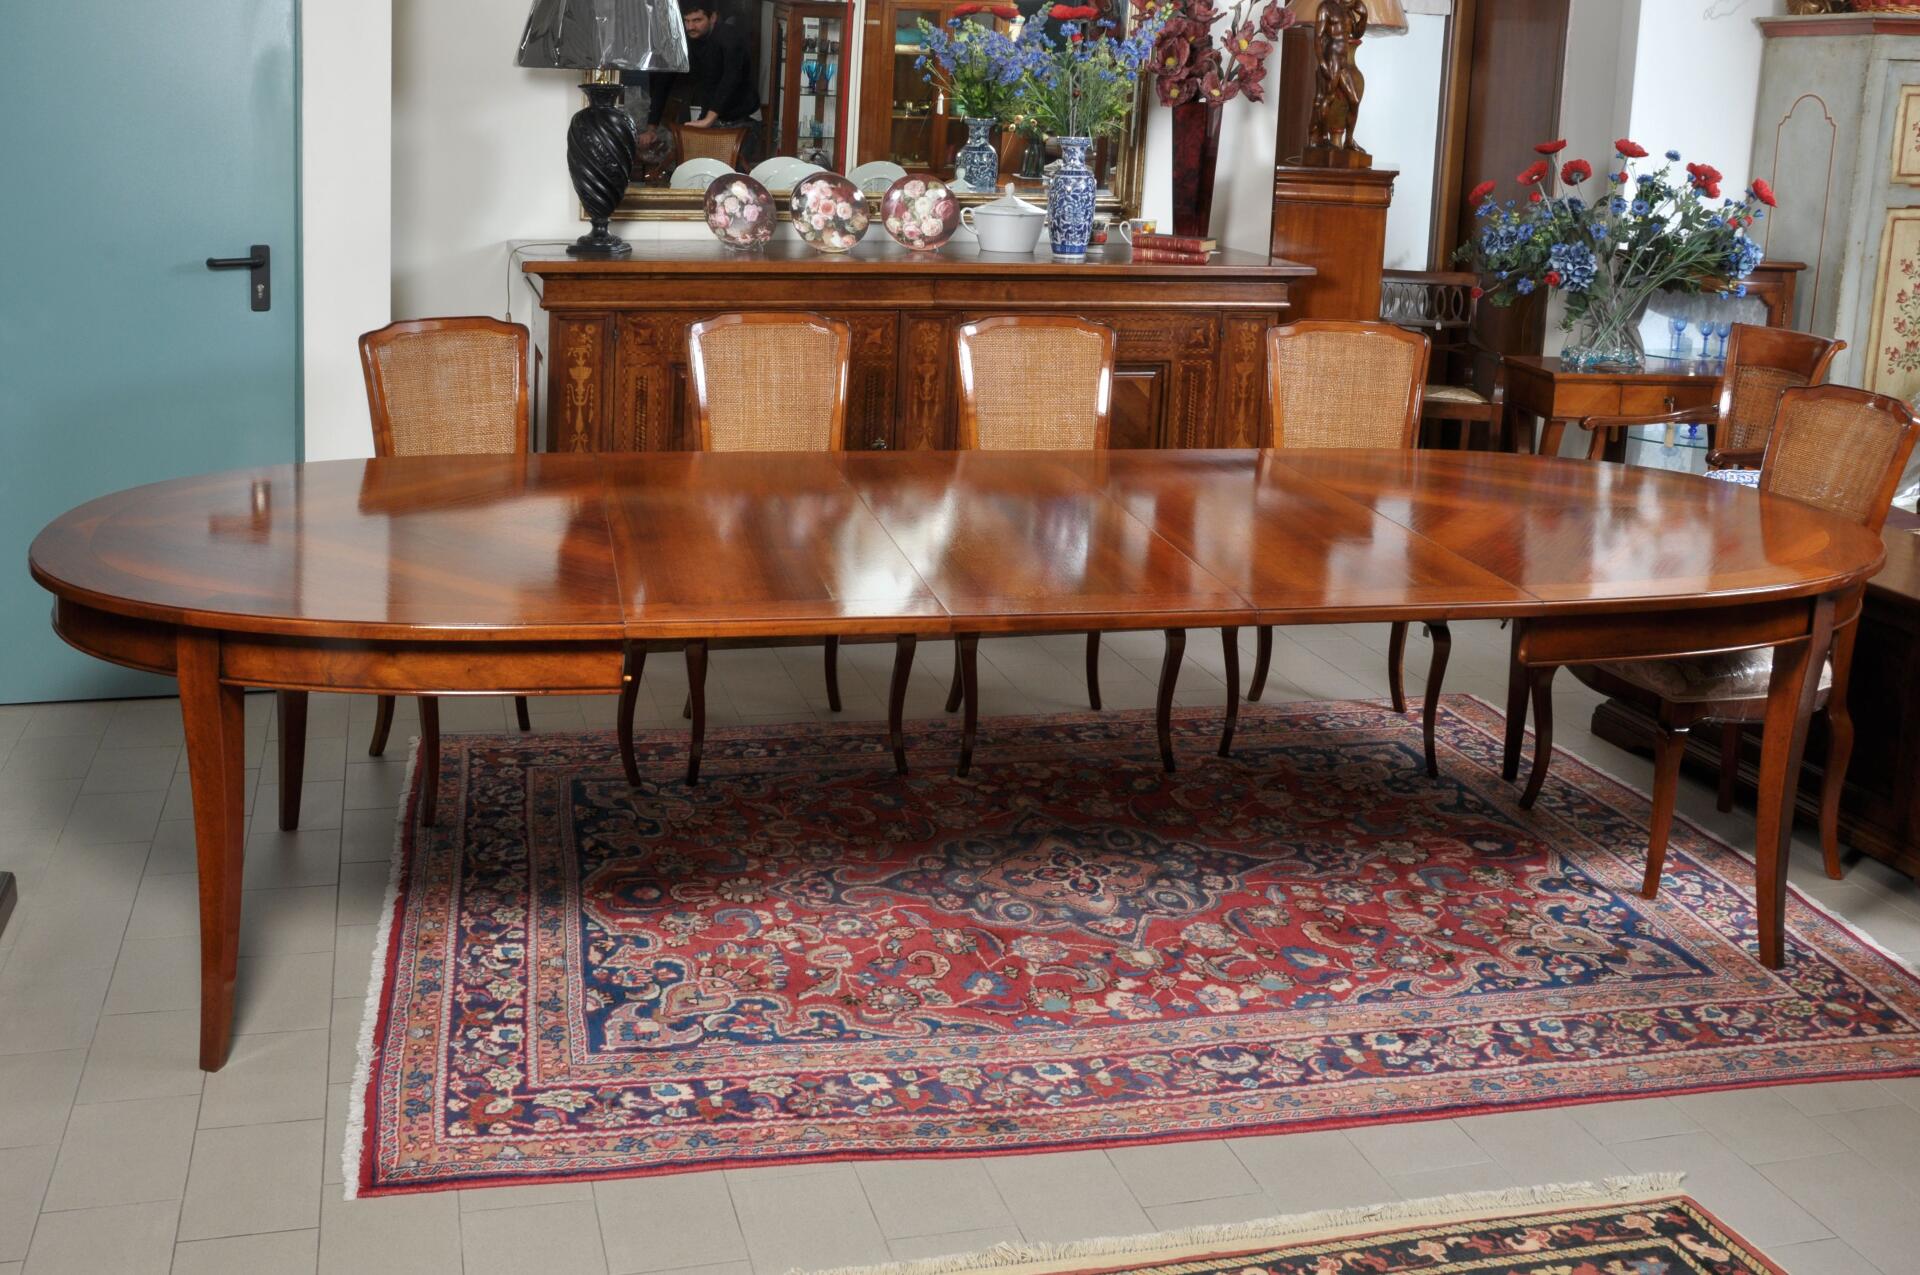 riproduzione tavolo ovale intarsiato in legno di noce realizzabile su misura arredo made in Italy abbinabile in saloni e soggiorni di case di lusso importanti residenze e prestigiose dimore